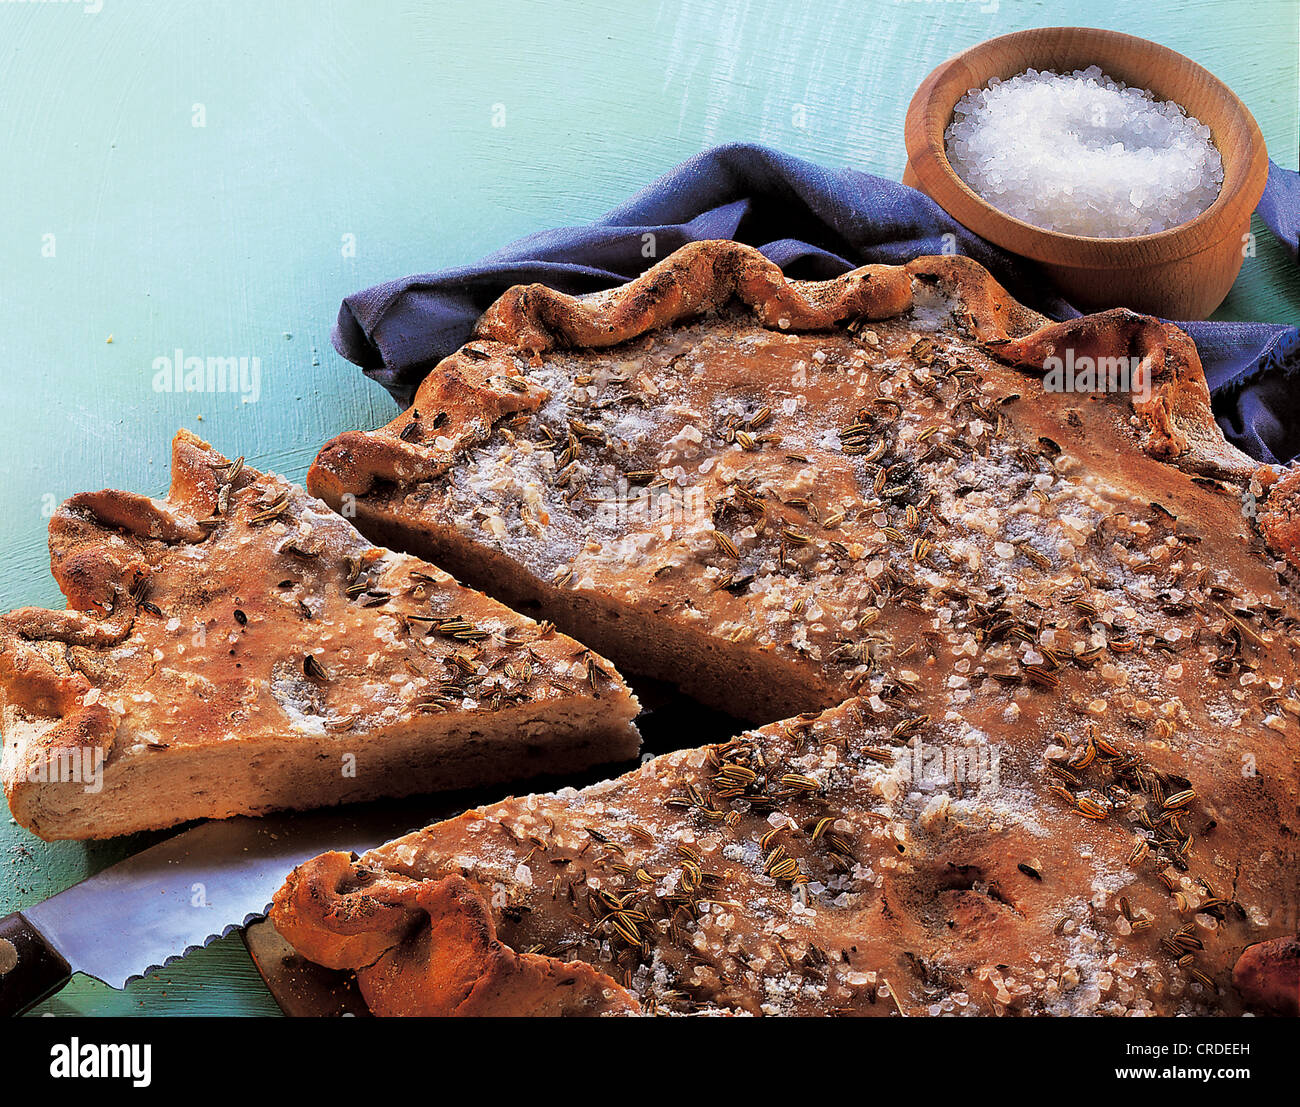 Soured pita bread, Tunisia. Stock Photo